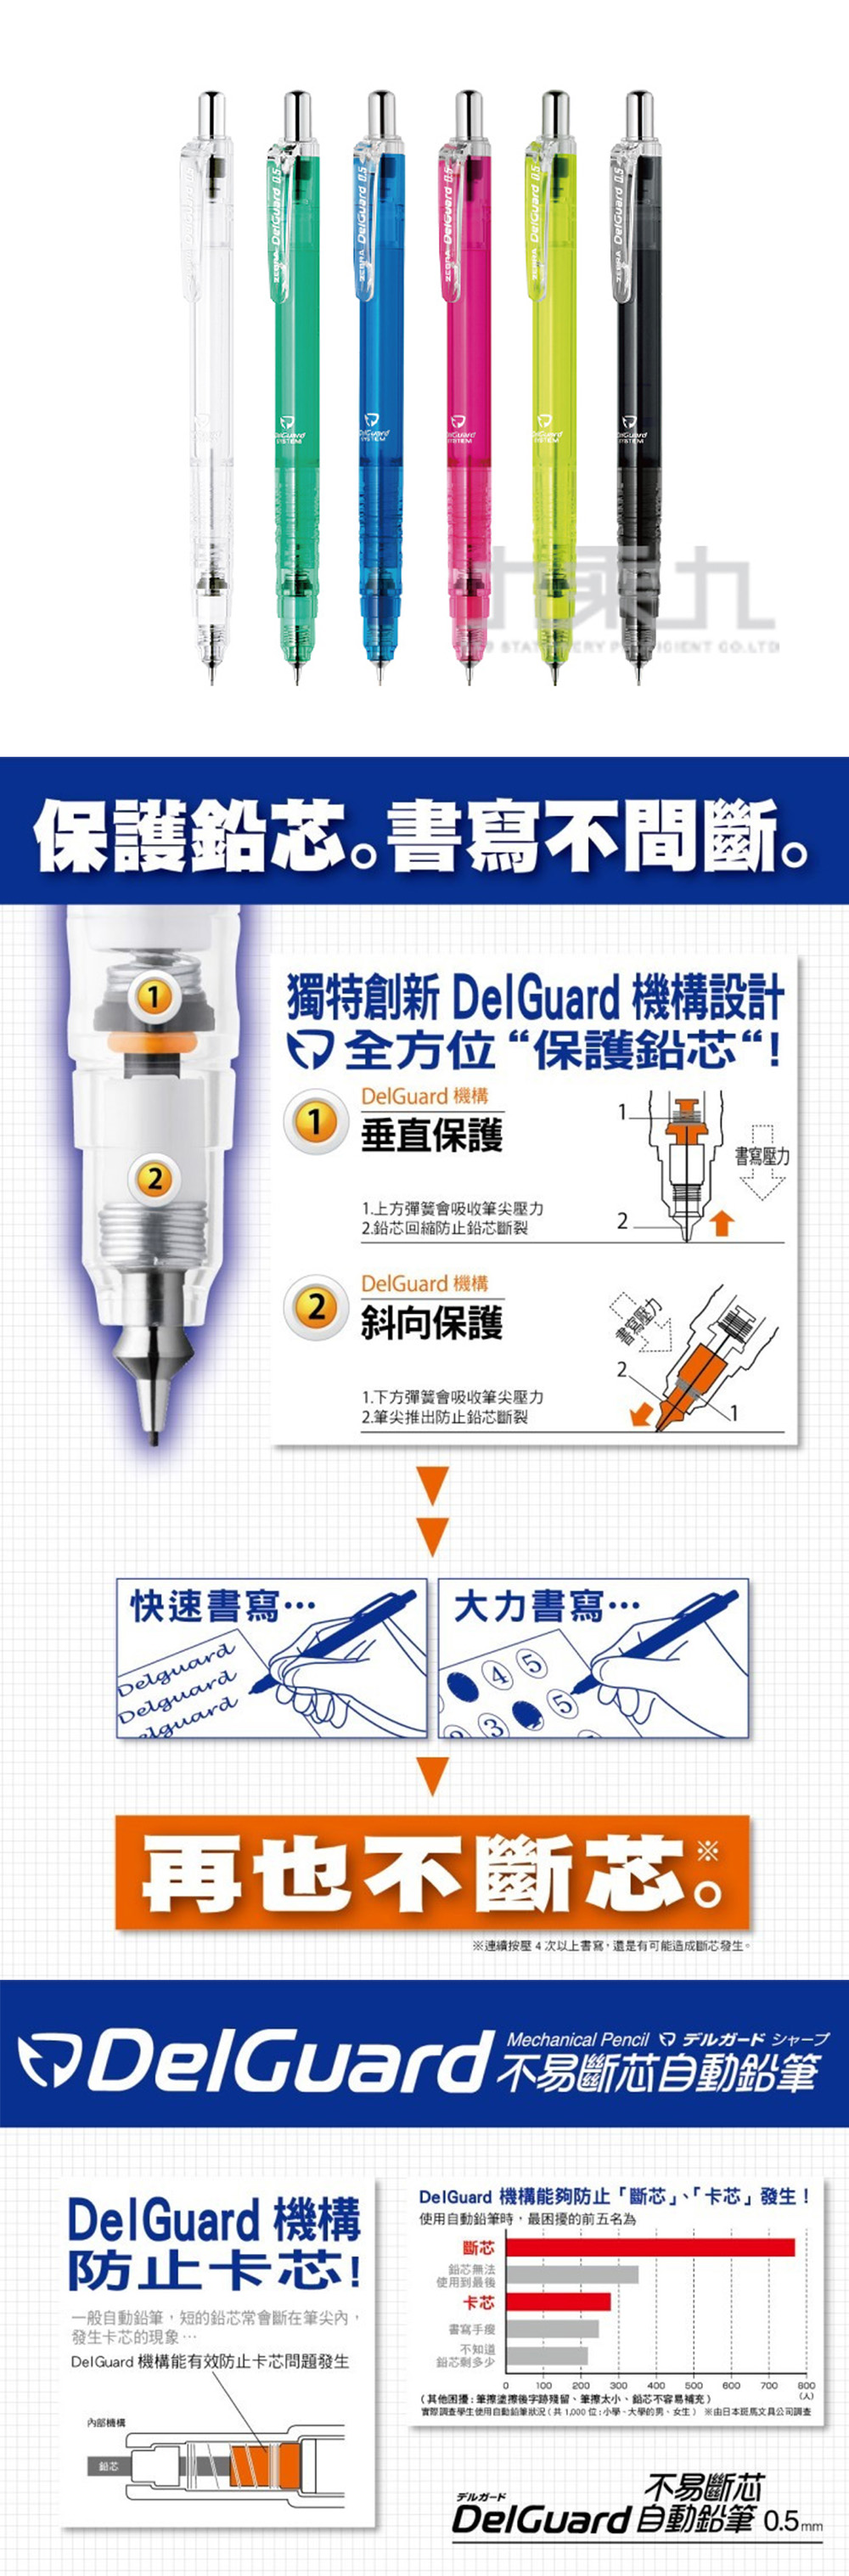 0.5 自動鉛筆 delguard 自動鉛筆 delguard 0.5